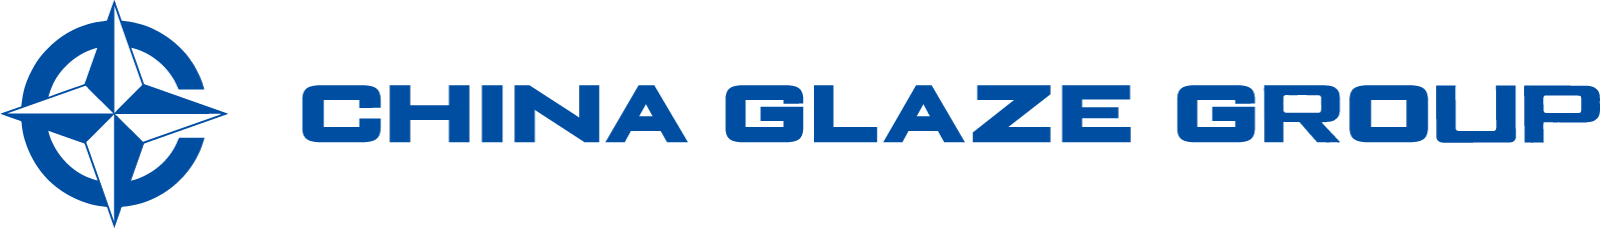 台湾本社企業のChina Glaze Co., Ltd.のお問合せフォームページ。China Glaze Co., Ltd.は台湾本社のガラス粉末メーカーです。特殊ガラス微粉末、セラミック釉薬、ガラスフリット、ガラスパウダー、ガラス粉末を利用した、LTCC、PiG、顔料、建材、などの材料として研究開発から製造販売をサポートします。2022年5月に日本窓口としてChina Glaze Co., Ltd.（和名：チャイナグレーズ株式会社） 東京デスクを設立しました。